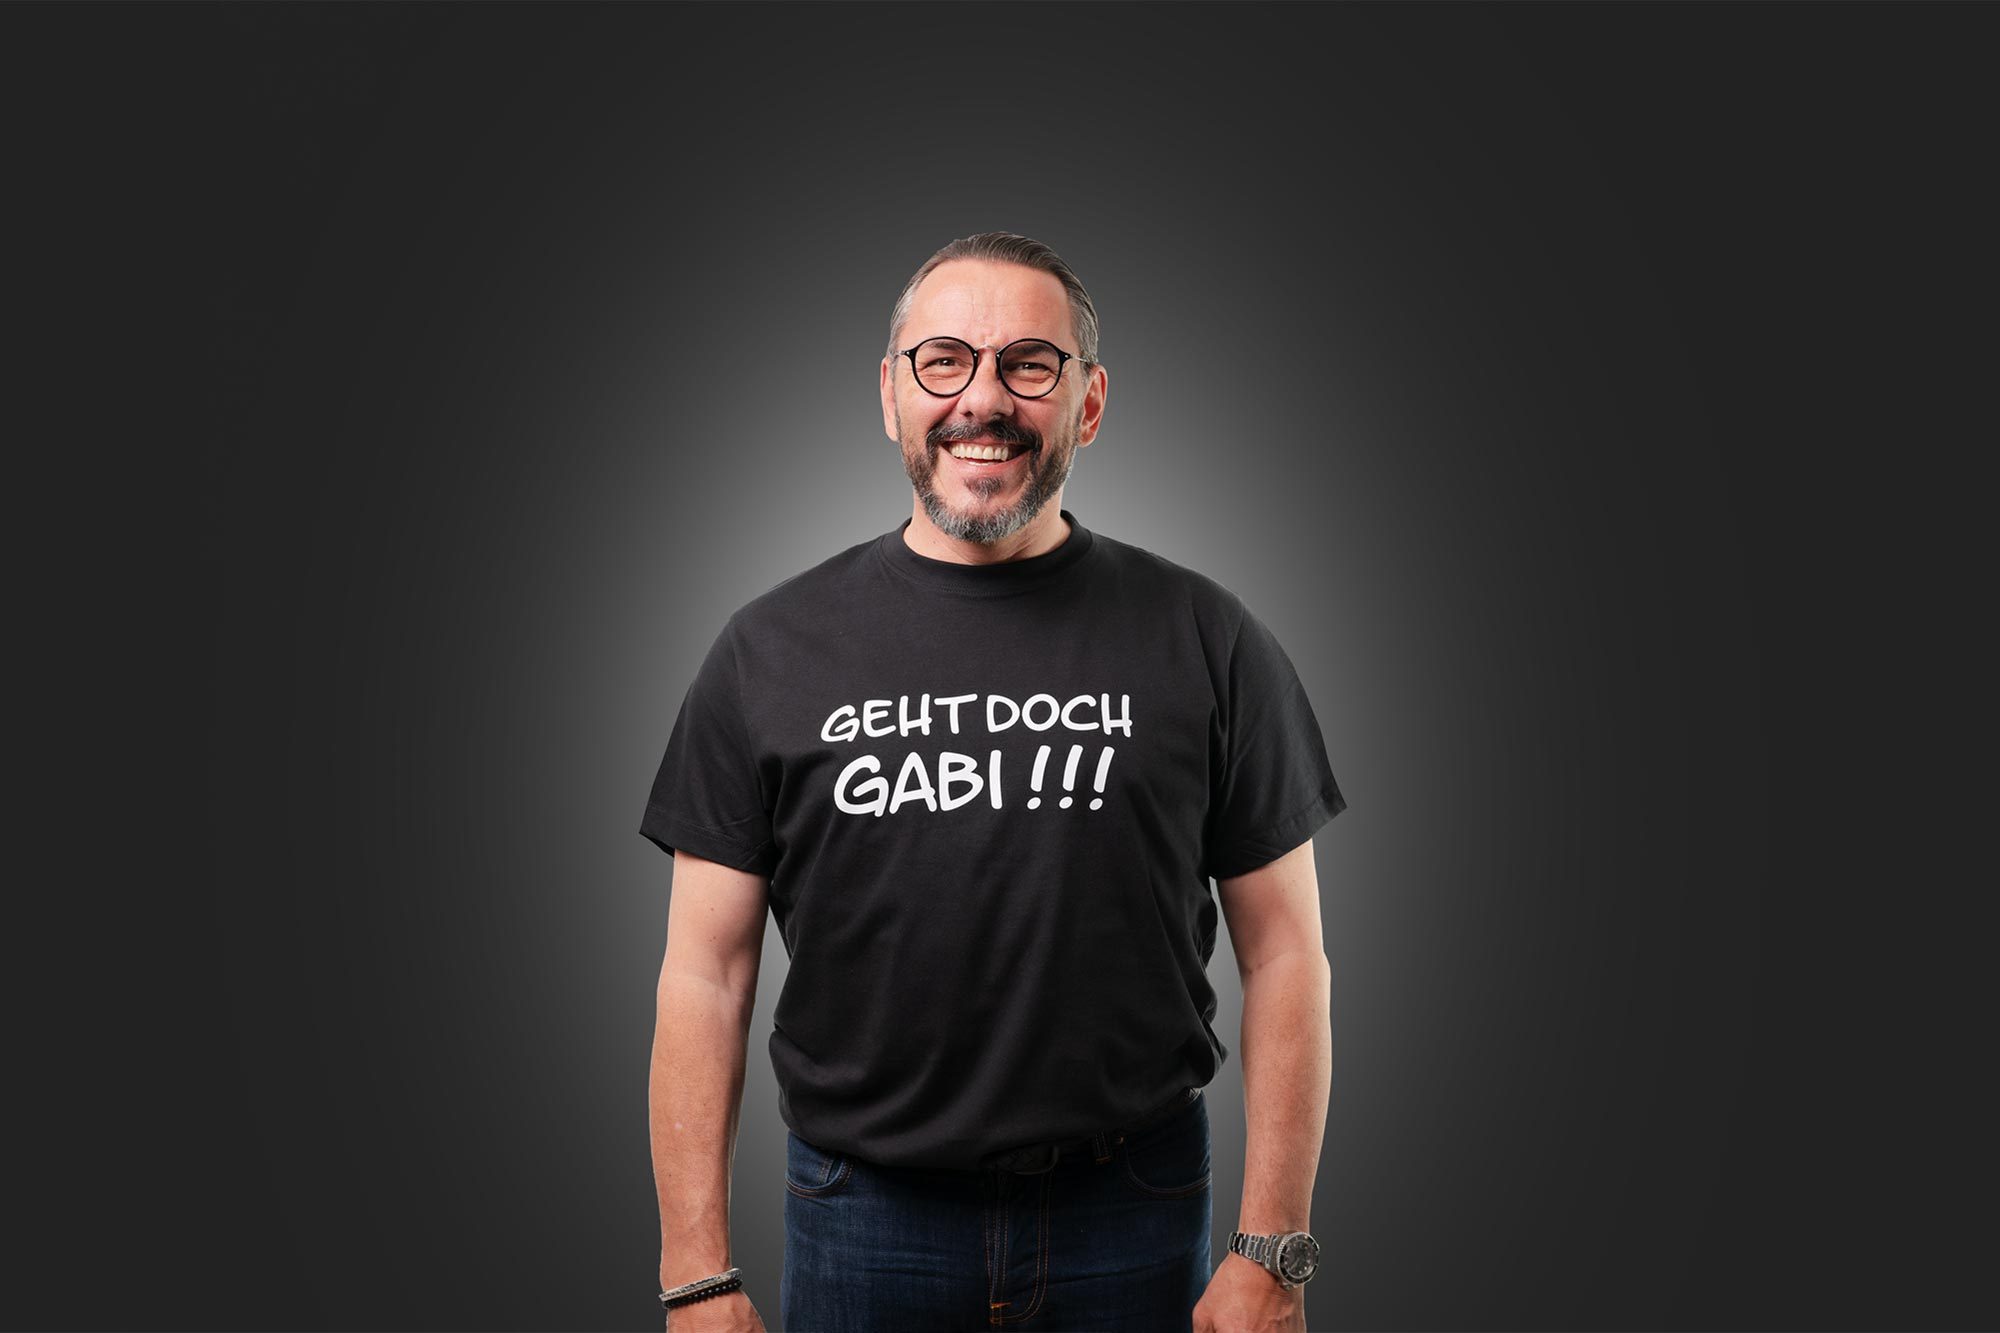 T-shirt mit dem Aufdruck "Geht doch Gabi!!!"